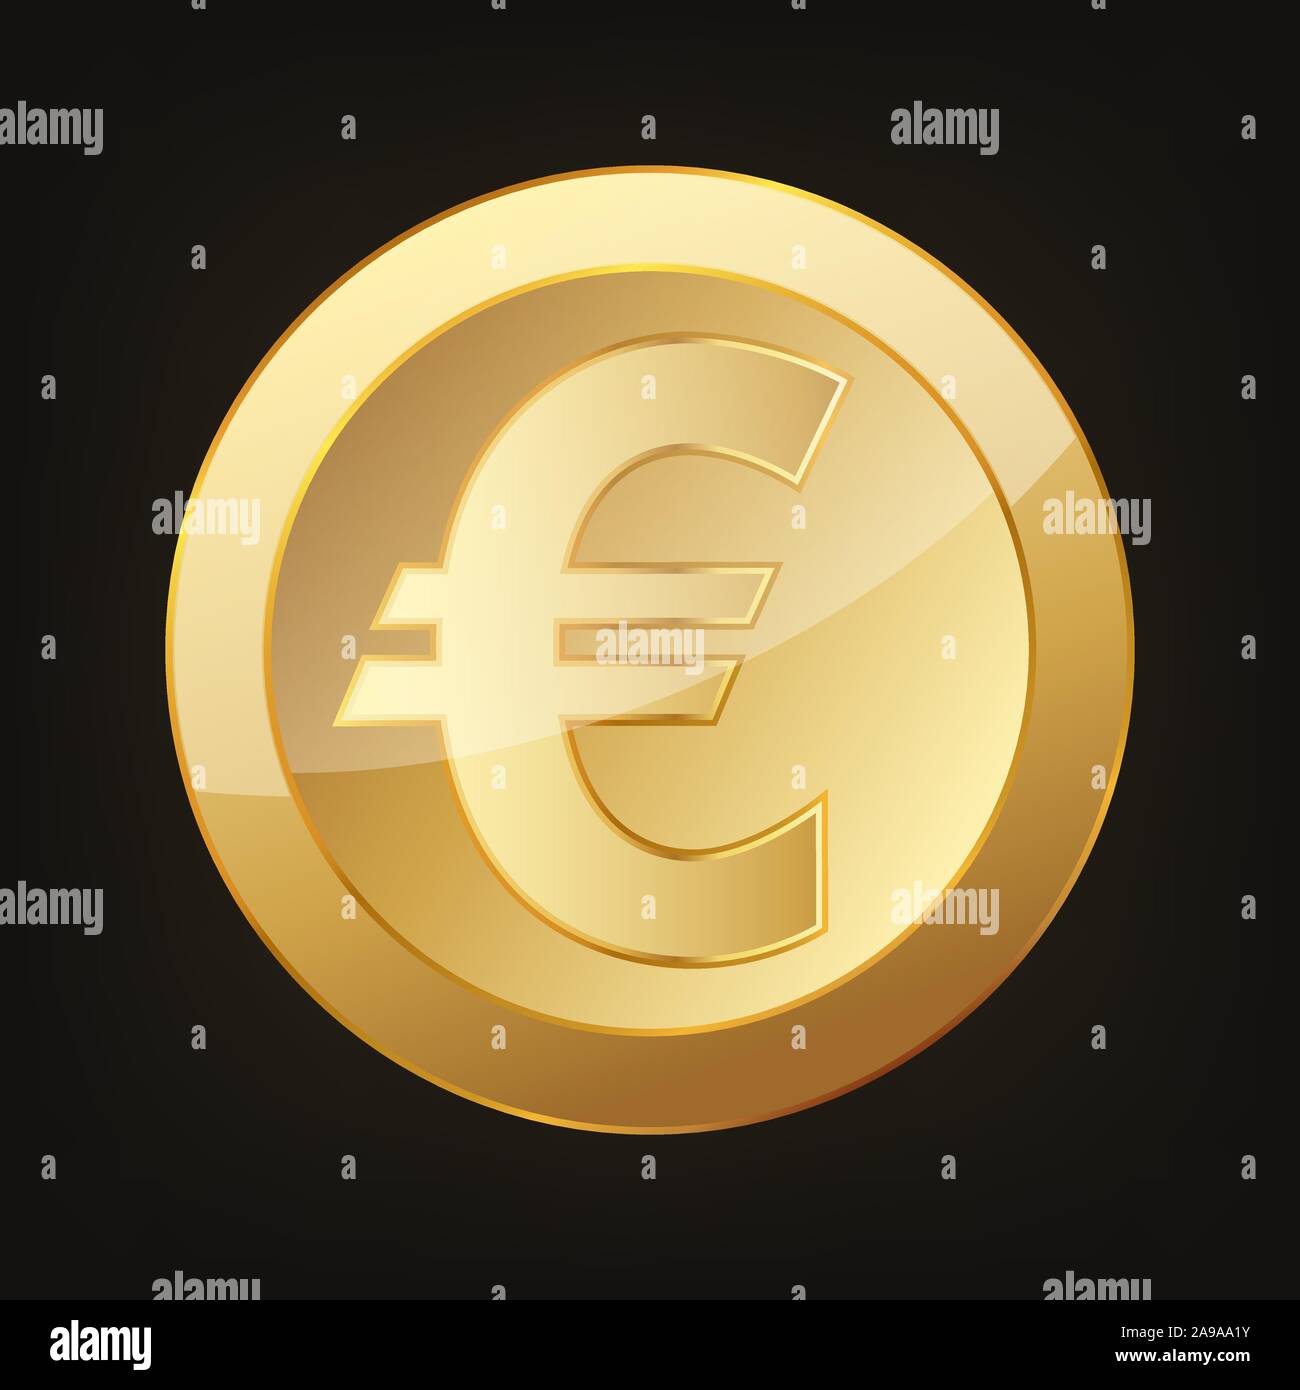 Gold euro coin. Vector illustration. Golden euro coin on dark background. Stock Vector